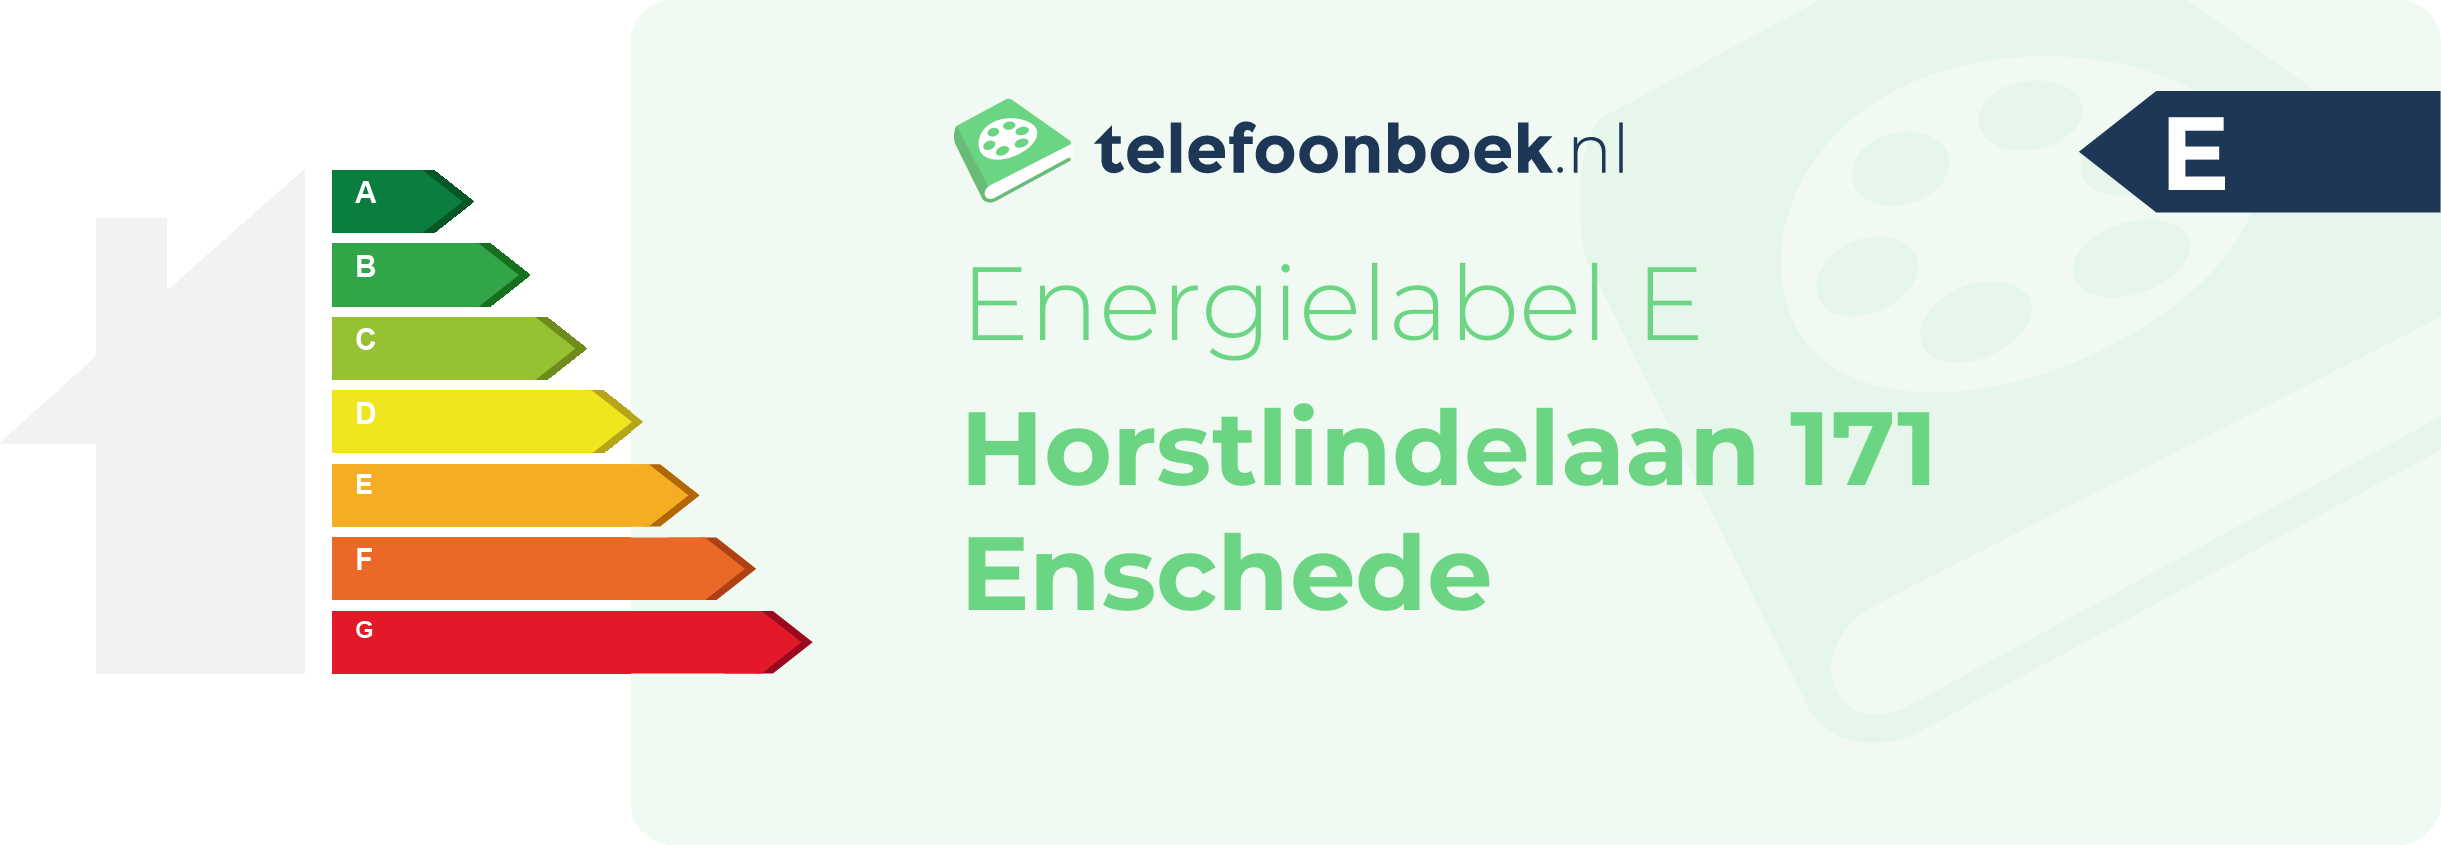 Energielabel Horstlindelaan 171 Enschede